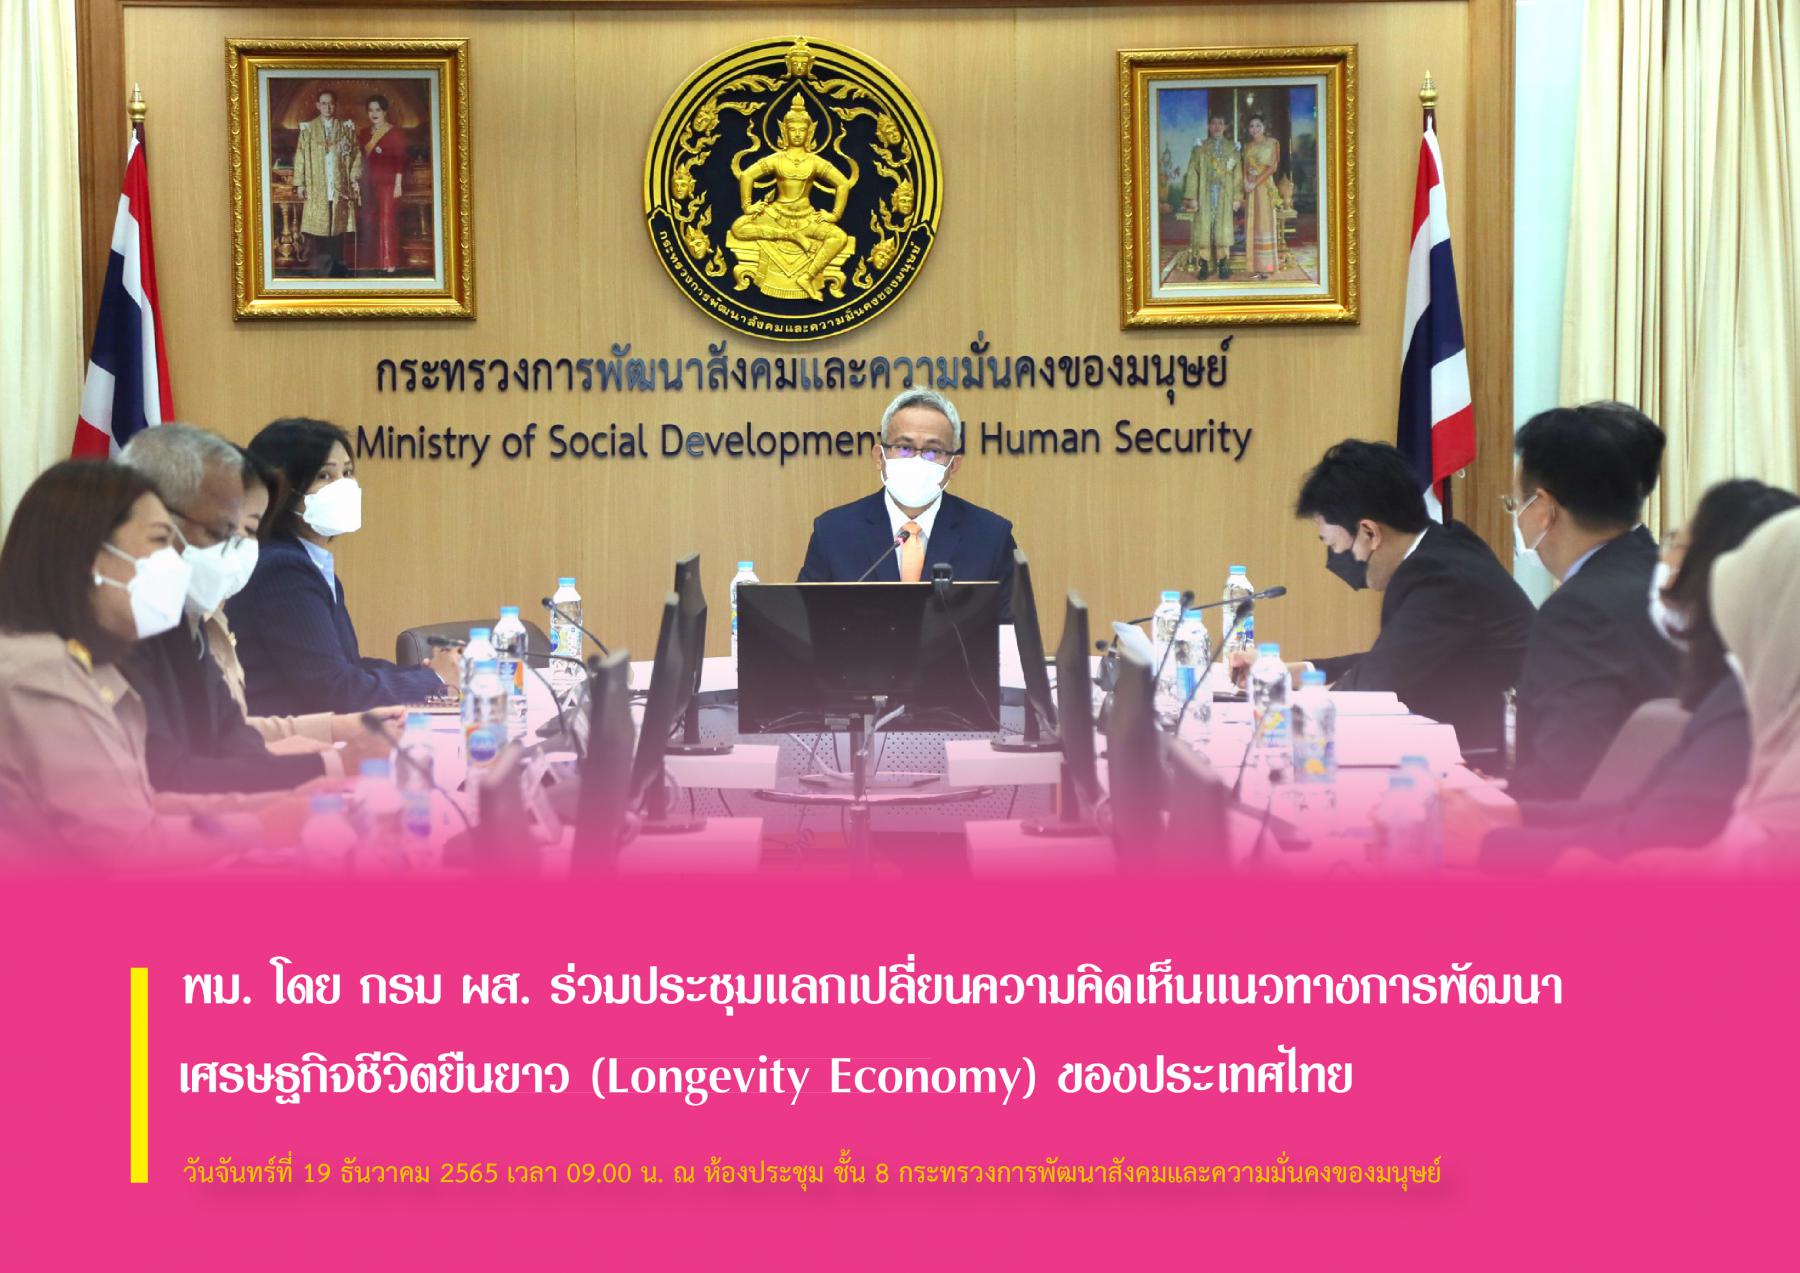 พม. โดย กรม ผส. ร่วมประชุมแลกเปลี่ยนความคิดเห็นแนวทางการพัฒนาเศรษฐกิจชีวิตยืนยาว (Longevity Economy) ของประเทศไทย